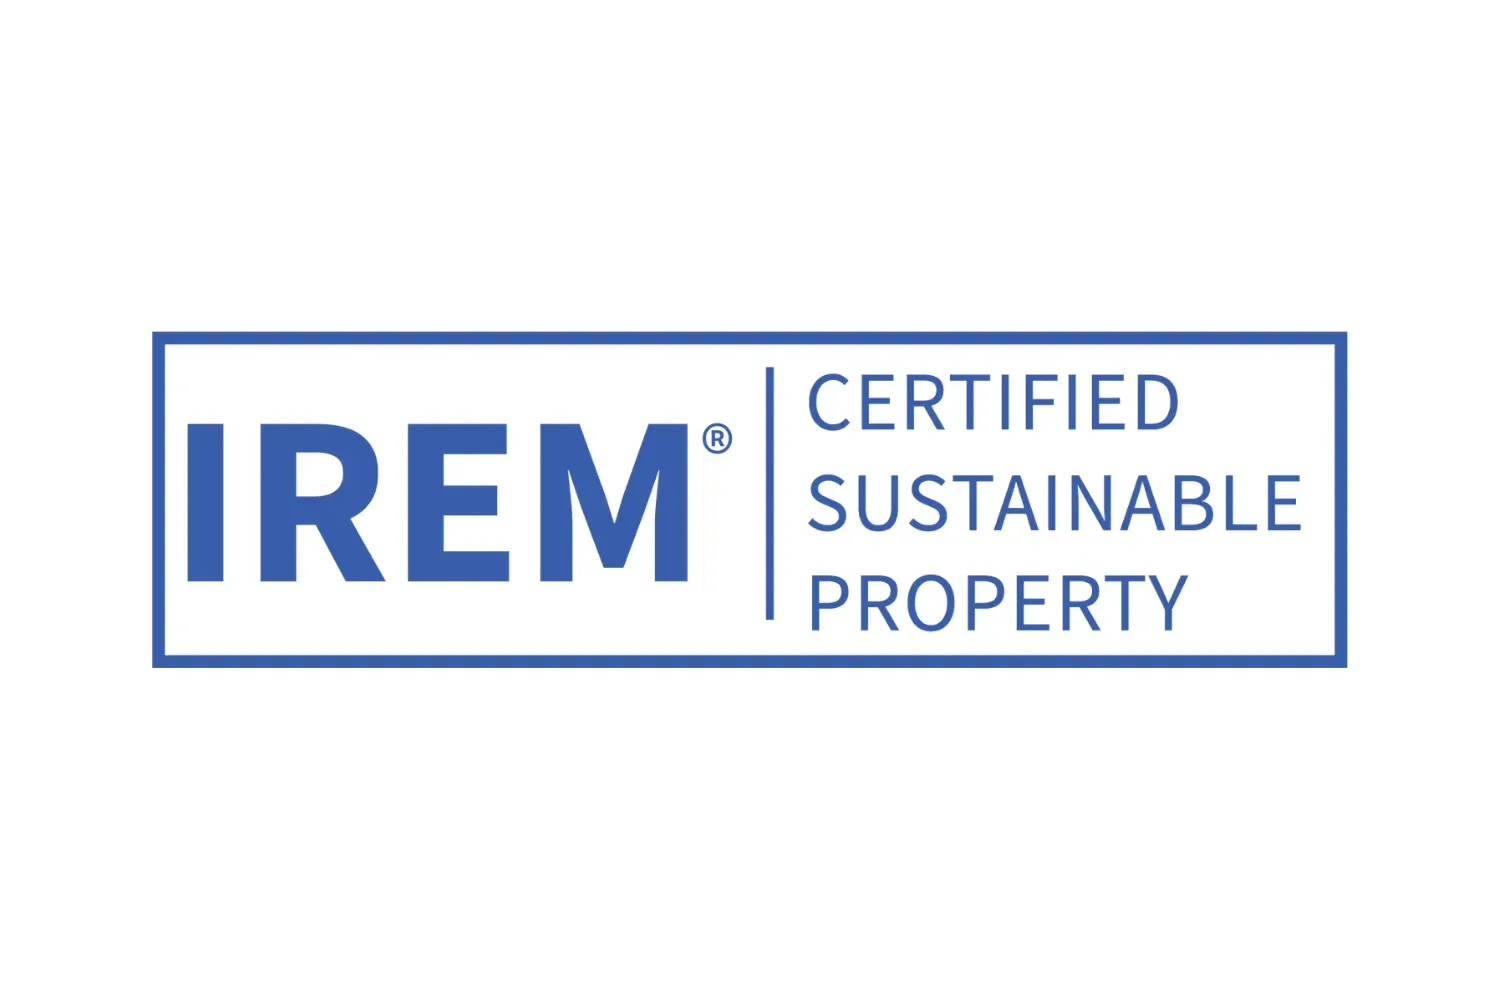 IREM Certified Sustainable Properties